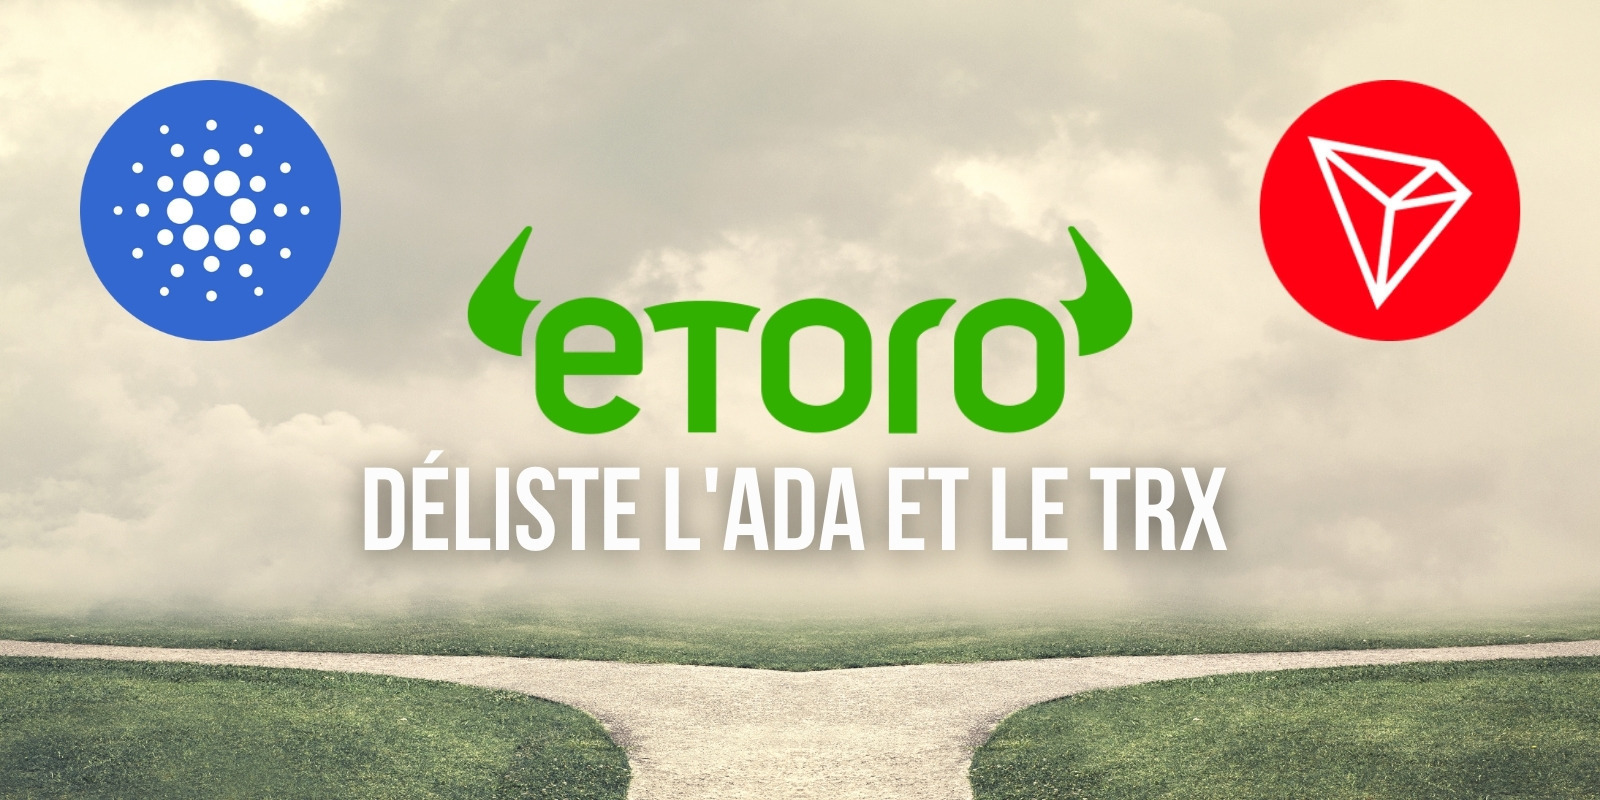 eToro déliste l'ADA de Cardano et le TRX de Tron de sa plateforme pour les utilisateurs américains